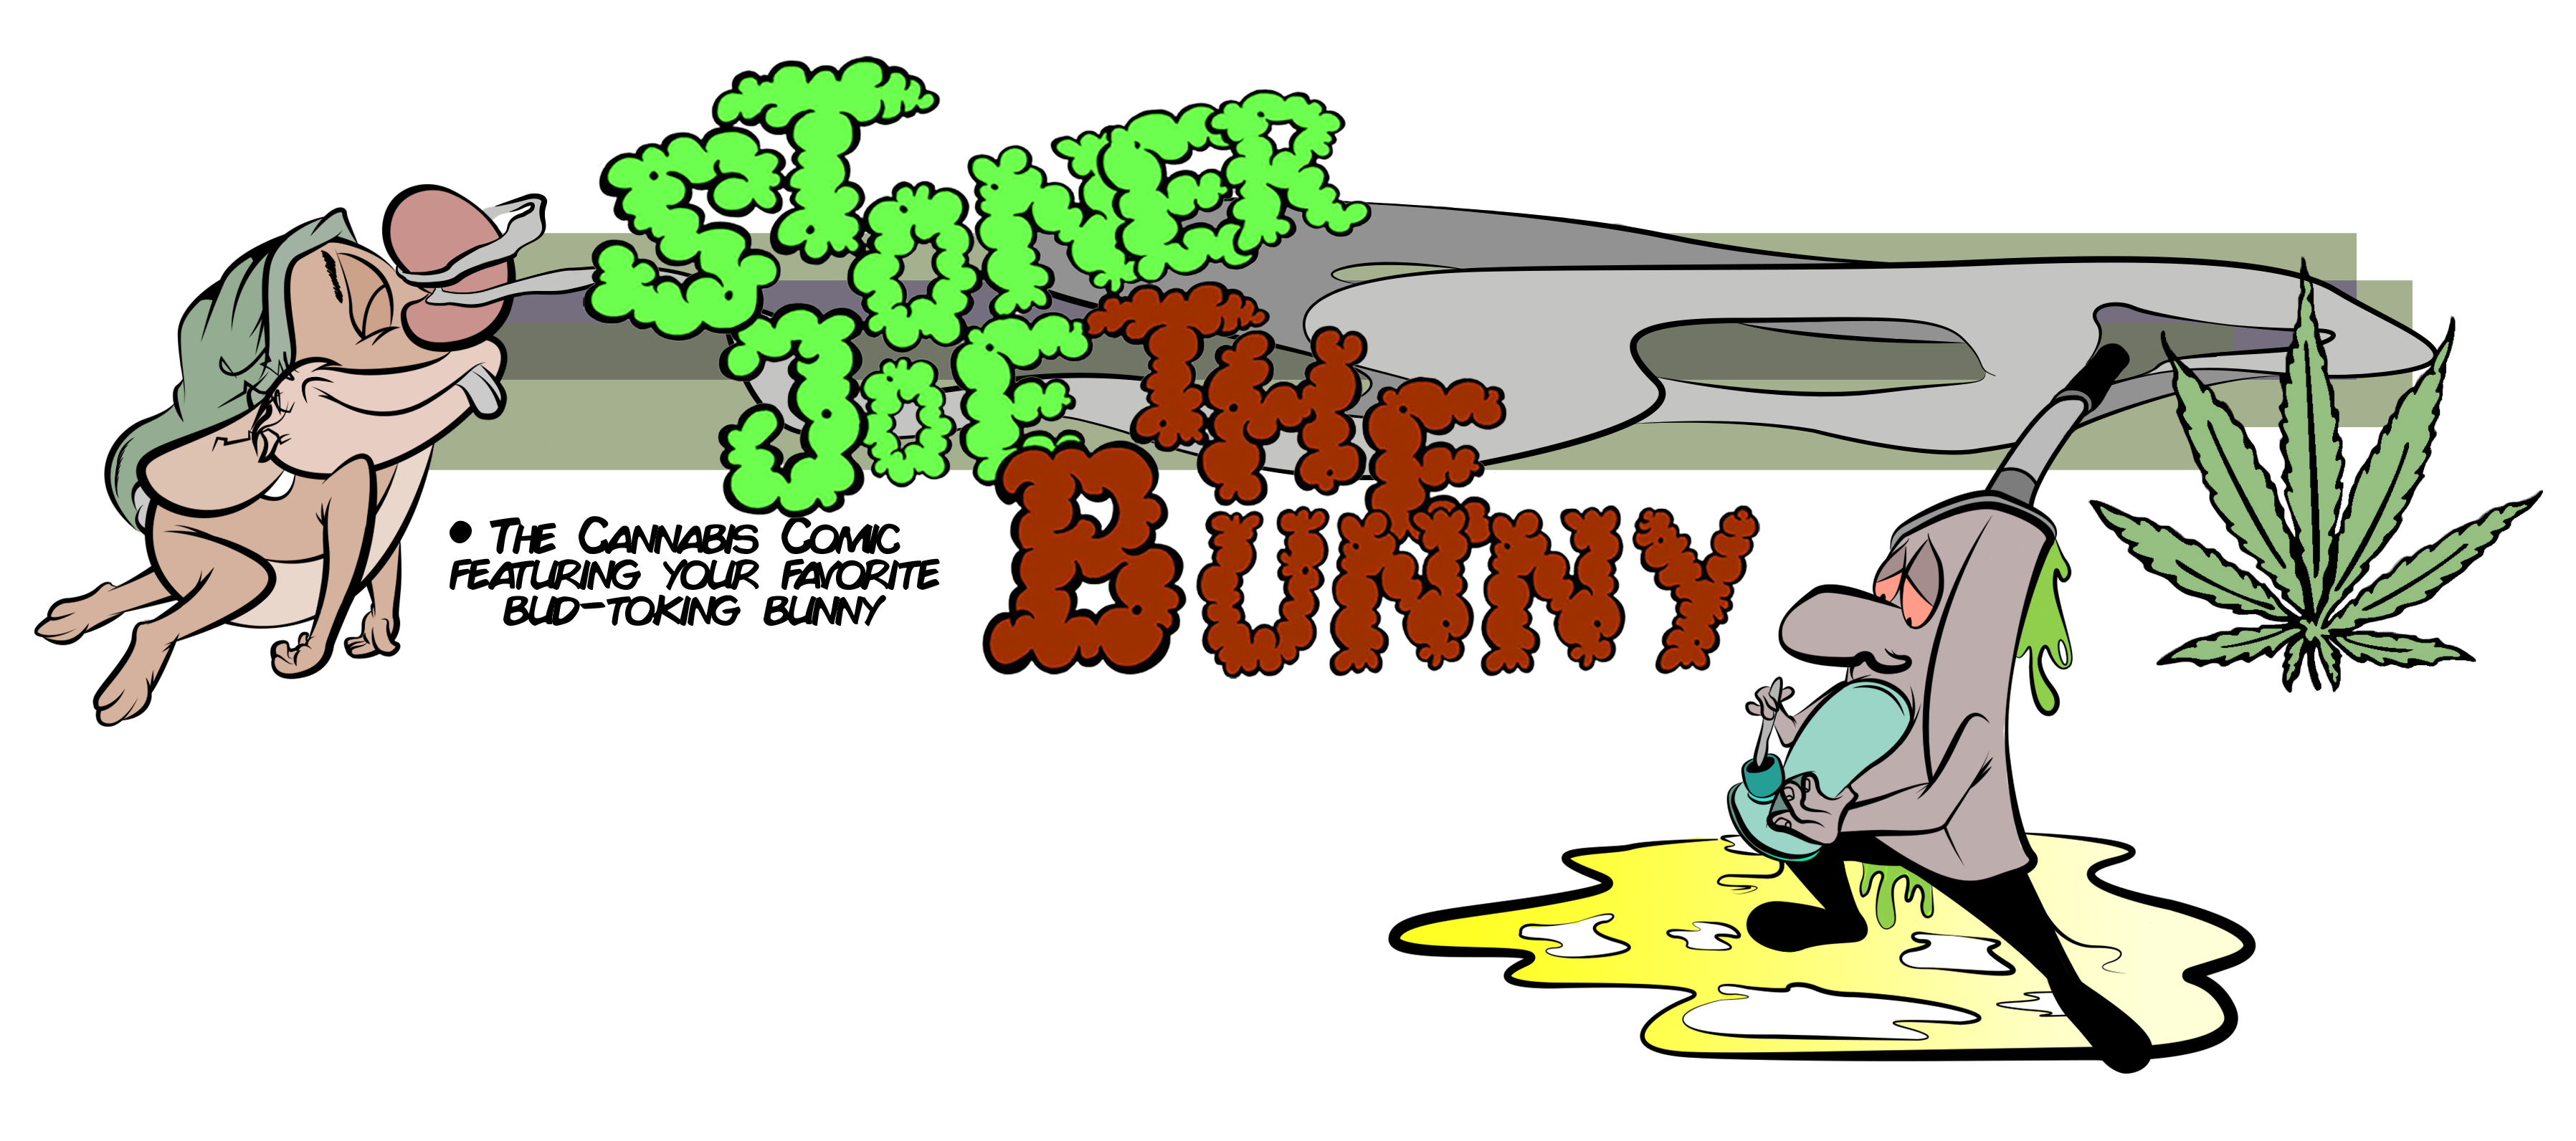 Stoner Joe the Bunny hompage header image